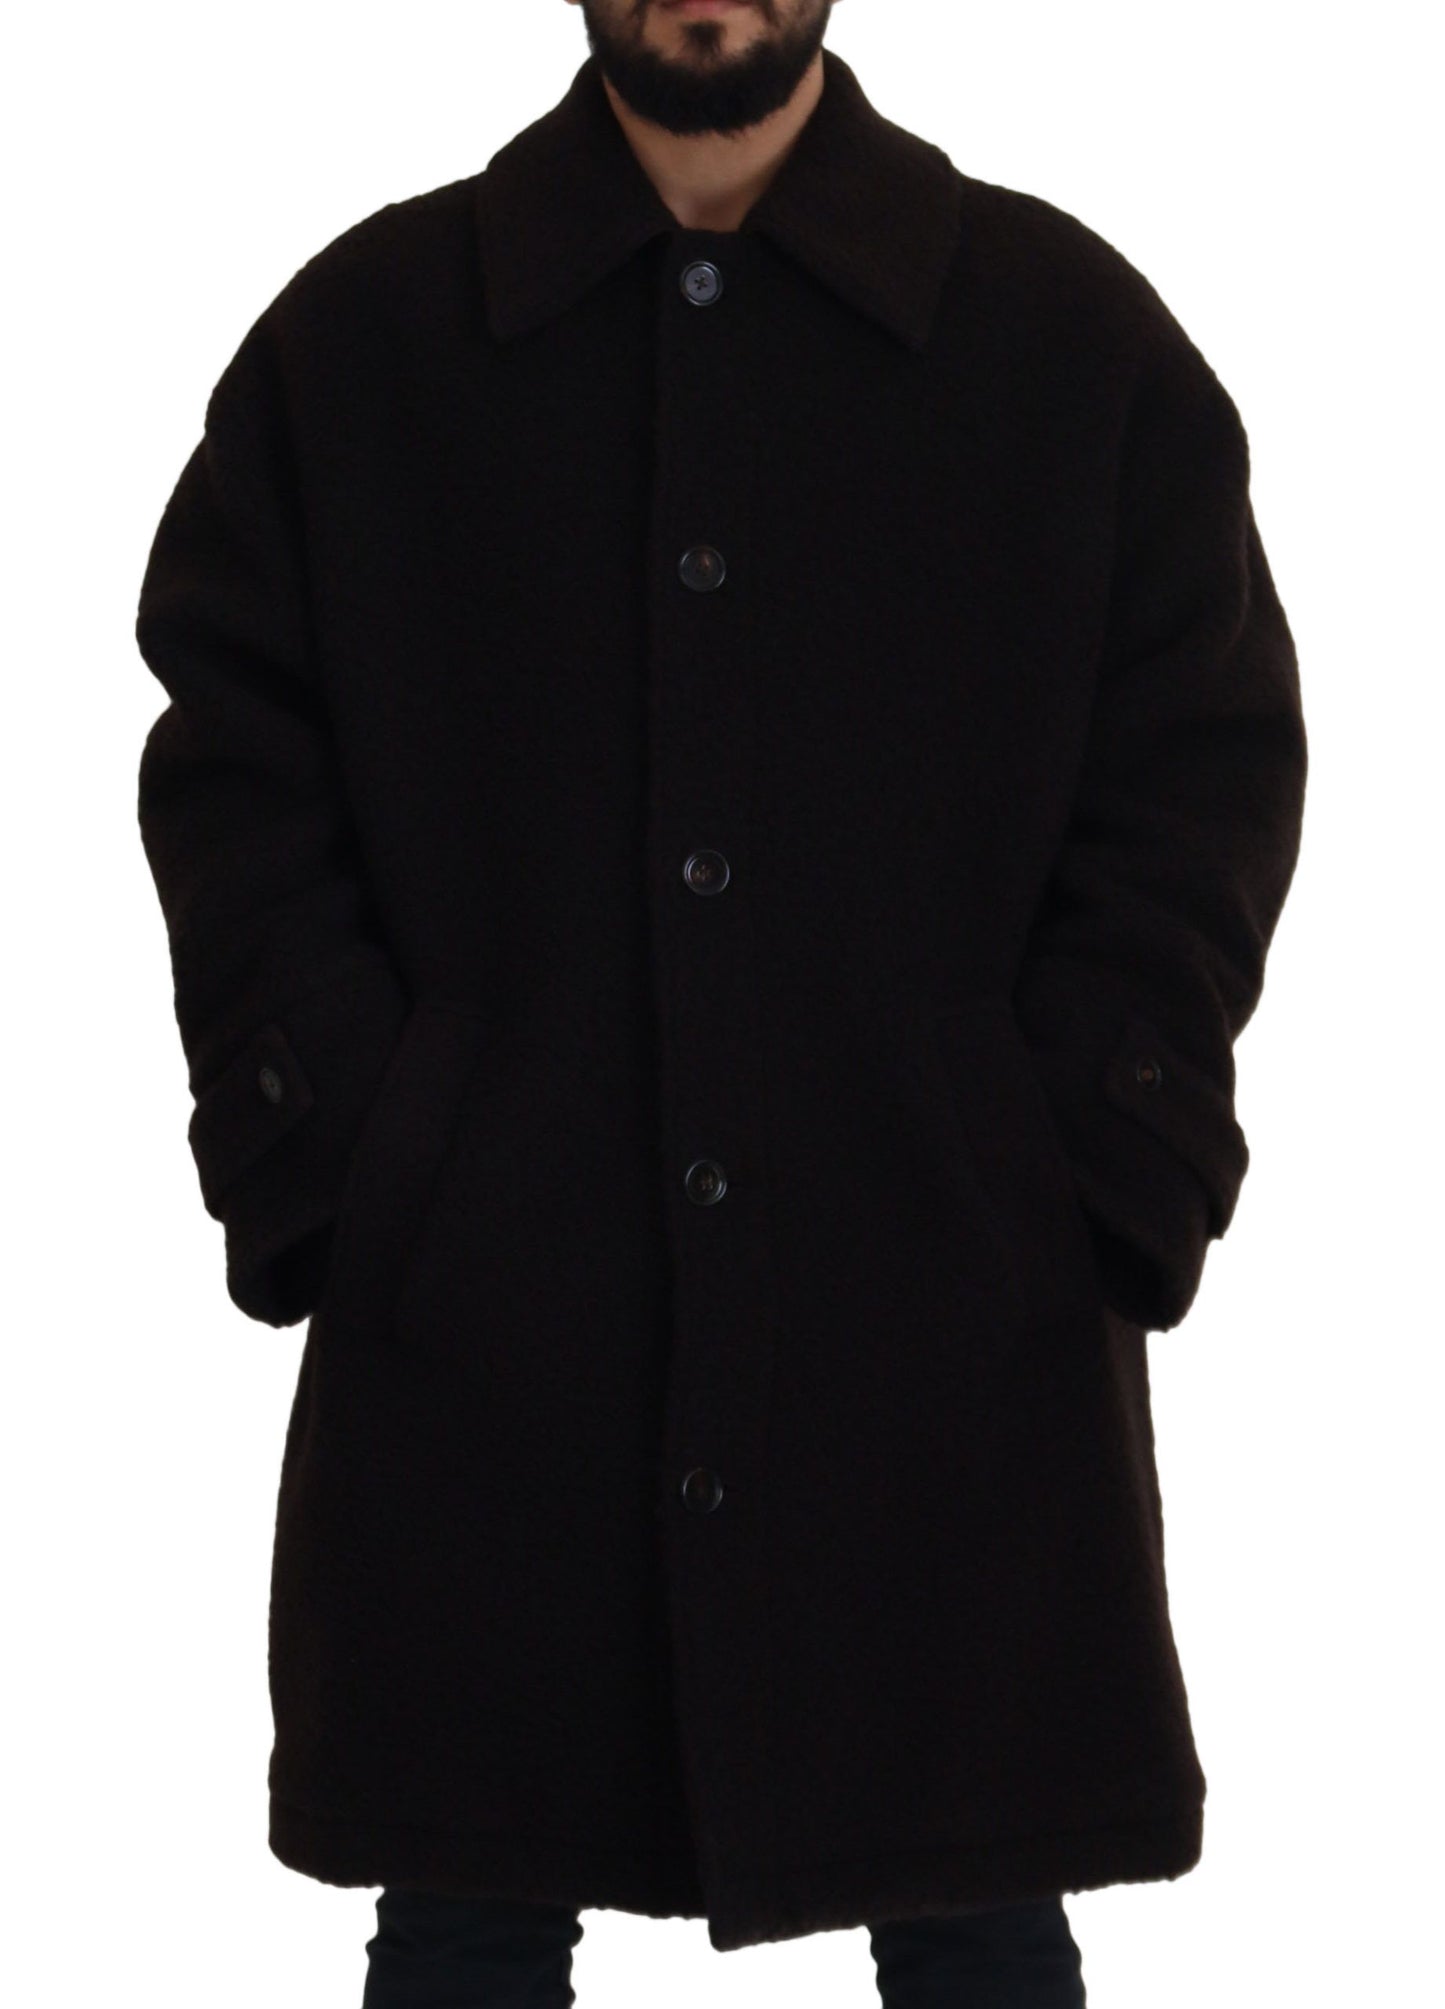 Elegant Black Alpaca Wool Blend Jacket